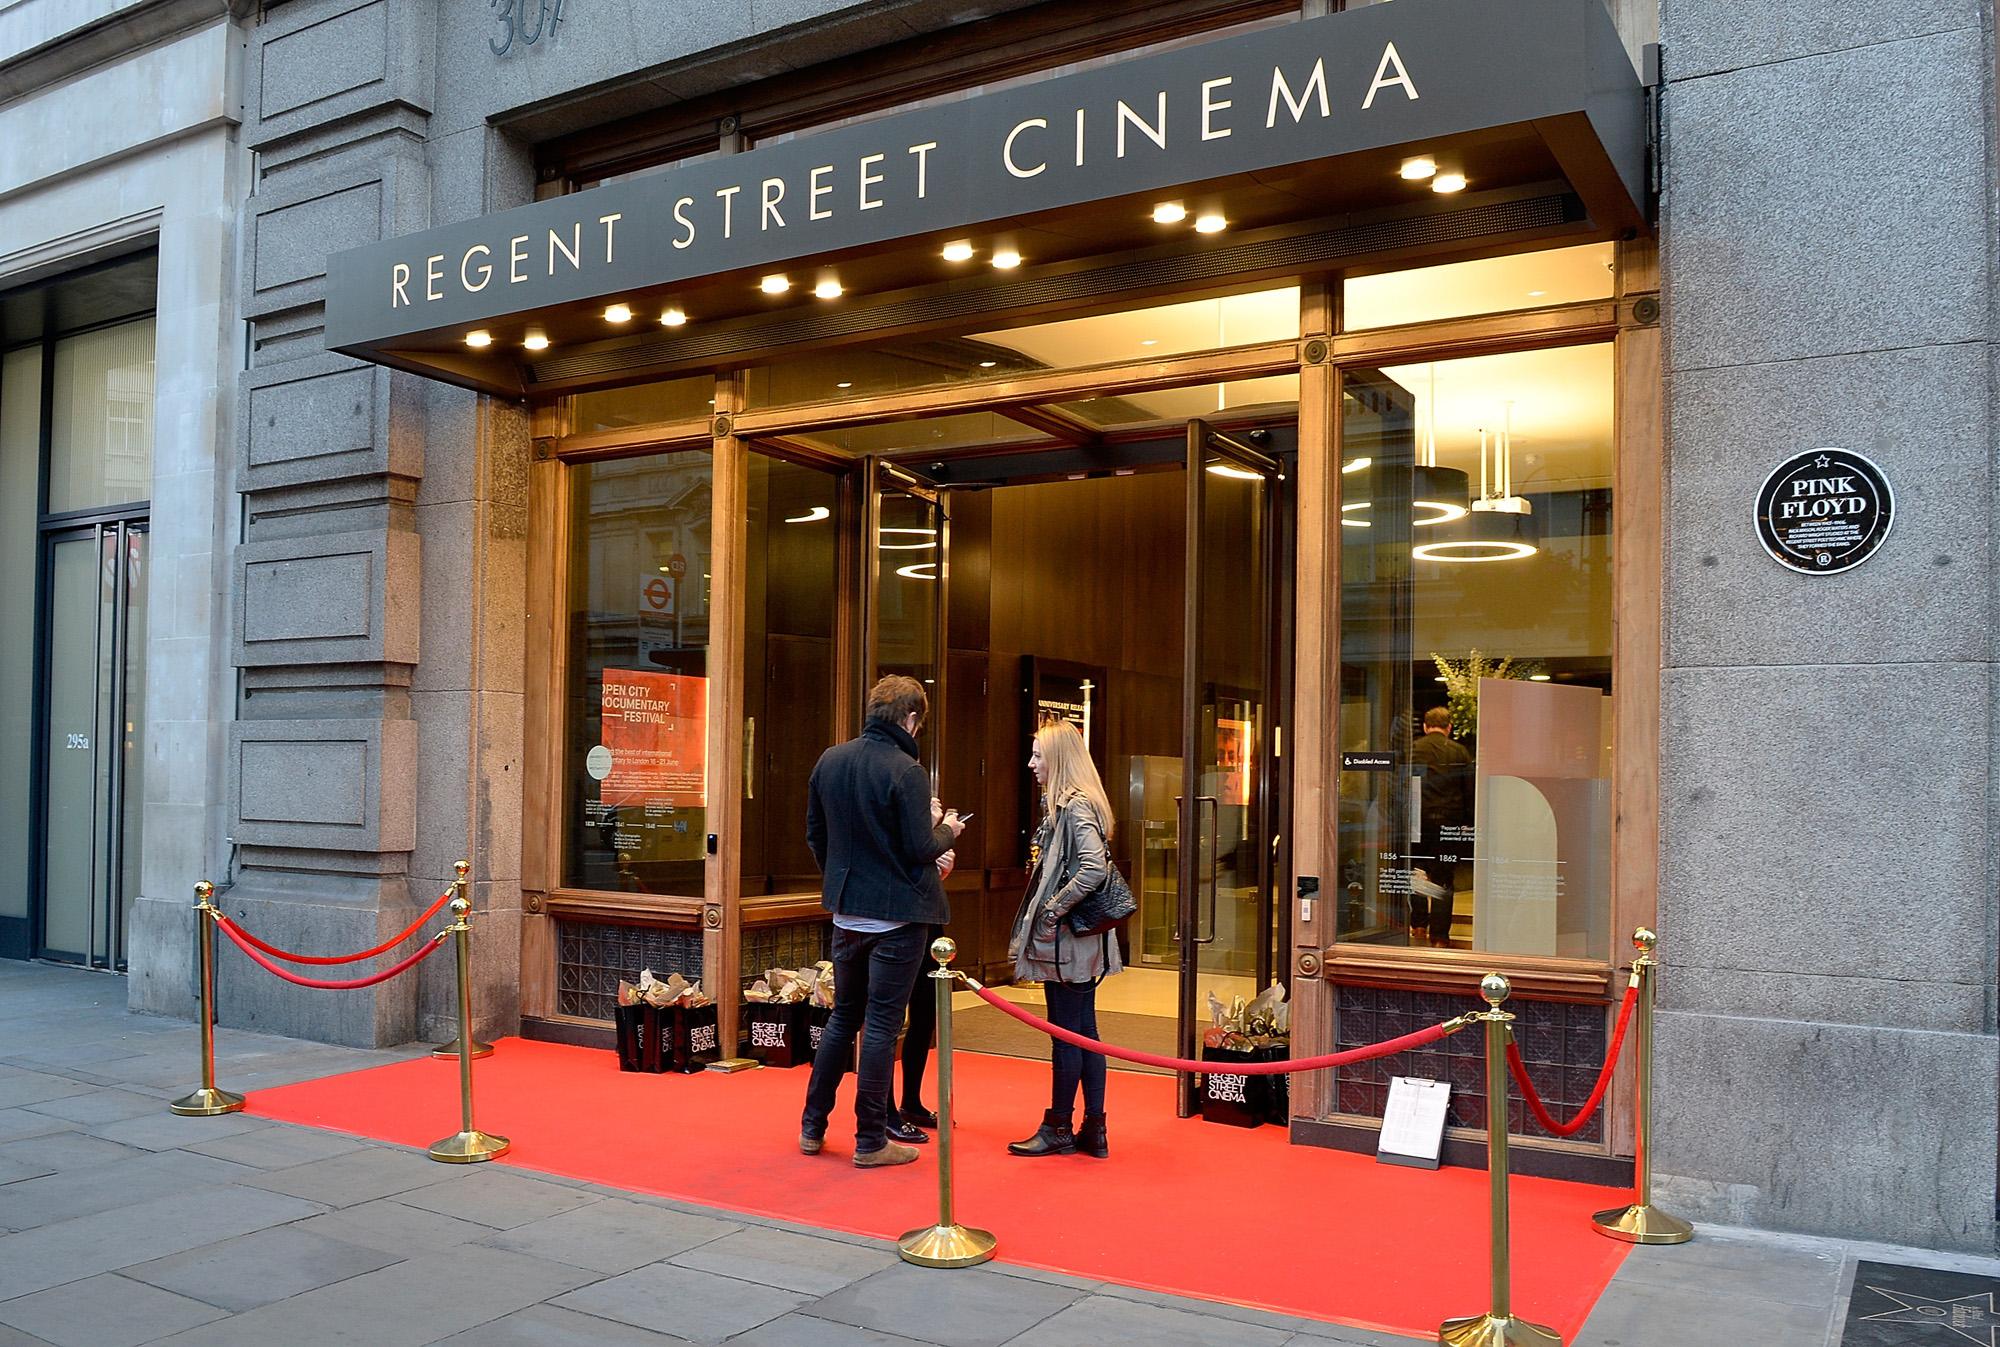 Regent Street Cinema, Regent Street Cinema photo #8